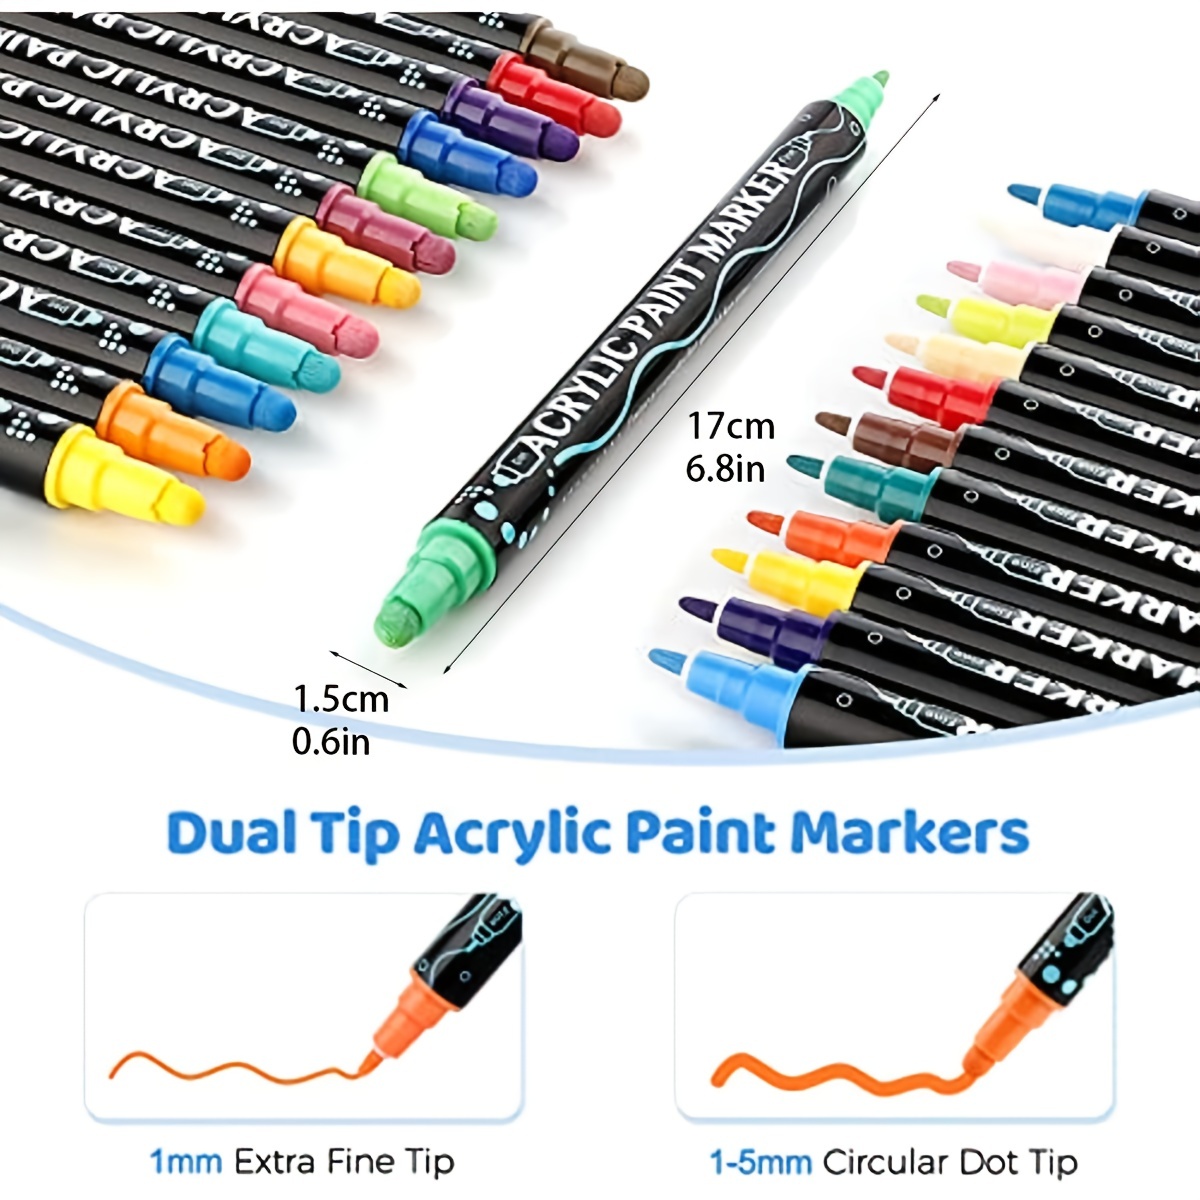 PAINTIGO 26 Paint Pens Paint Markers, Acrylic Paint Pens for Rock Painting, Canvas, Wood, Glass, Ceramic, Fabric, Acrylic Paint Markers for Craft